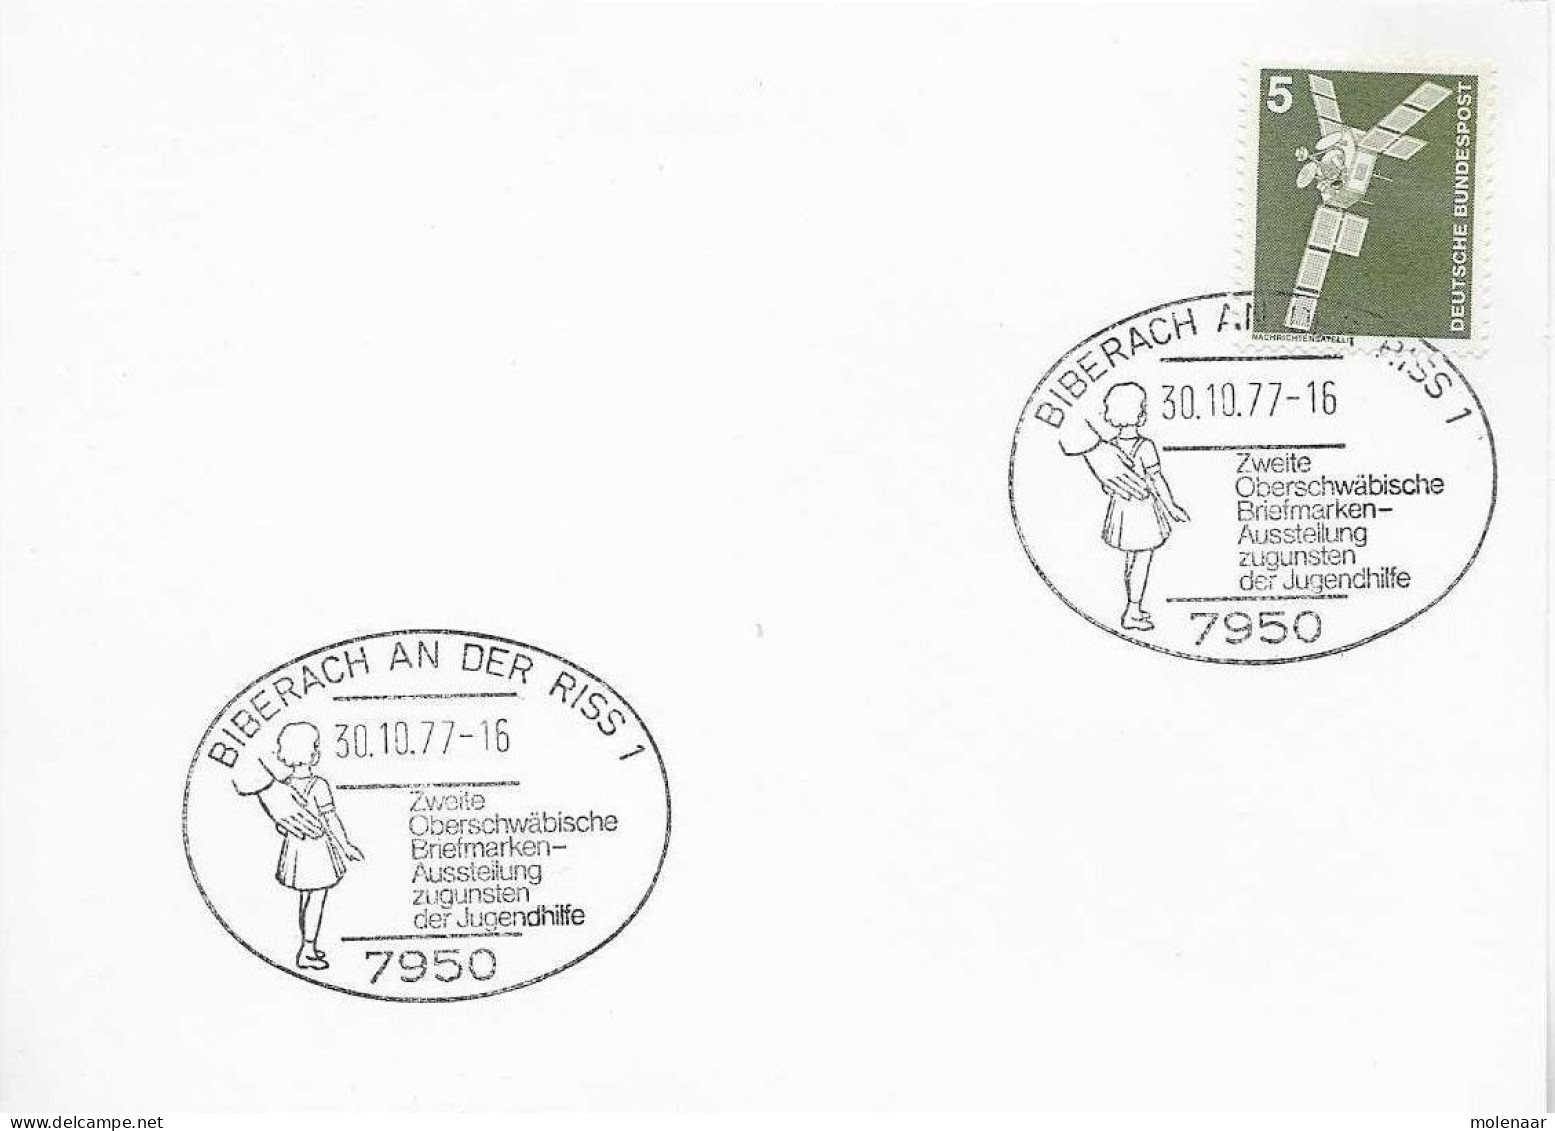 Postzegels > Europa > Duitsland > Berlijn > 1970-1979 > Kaart Met No. 494 (17150) - Covers & Documents